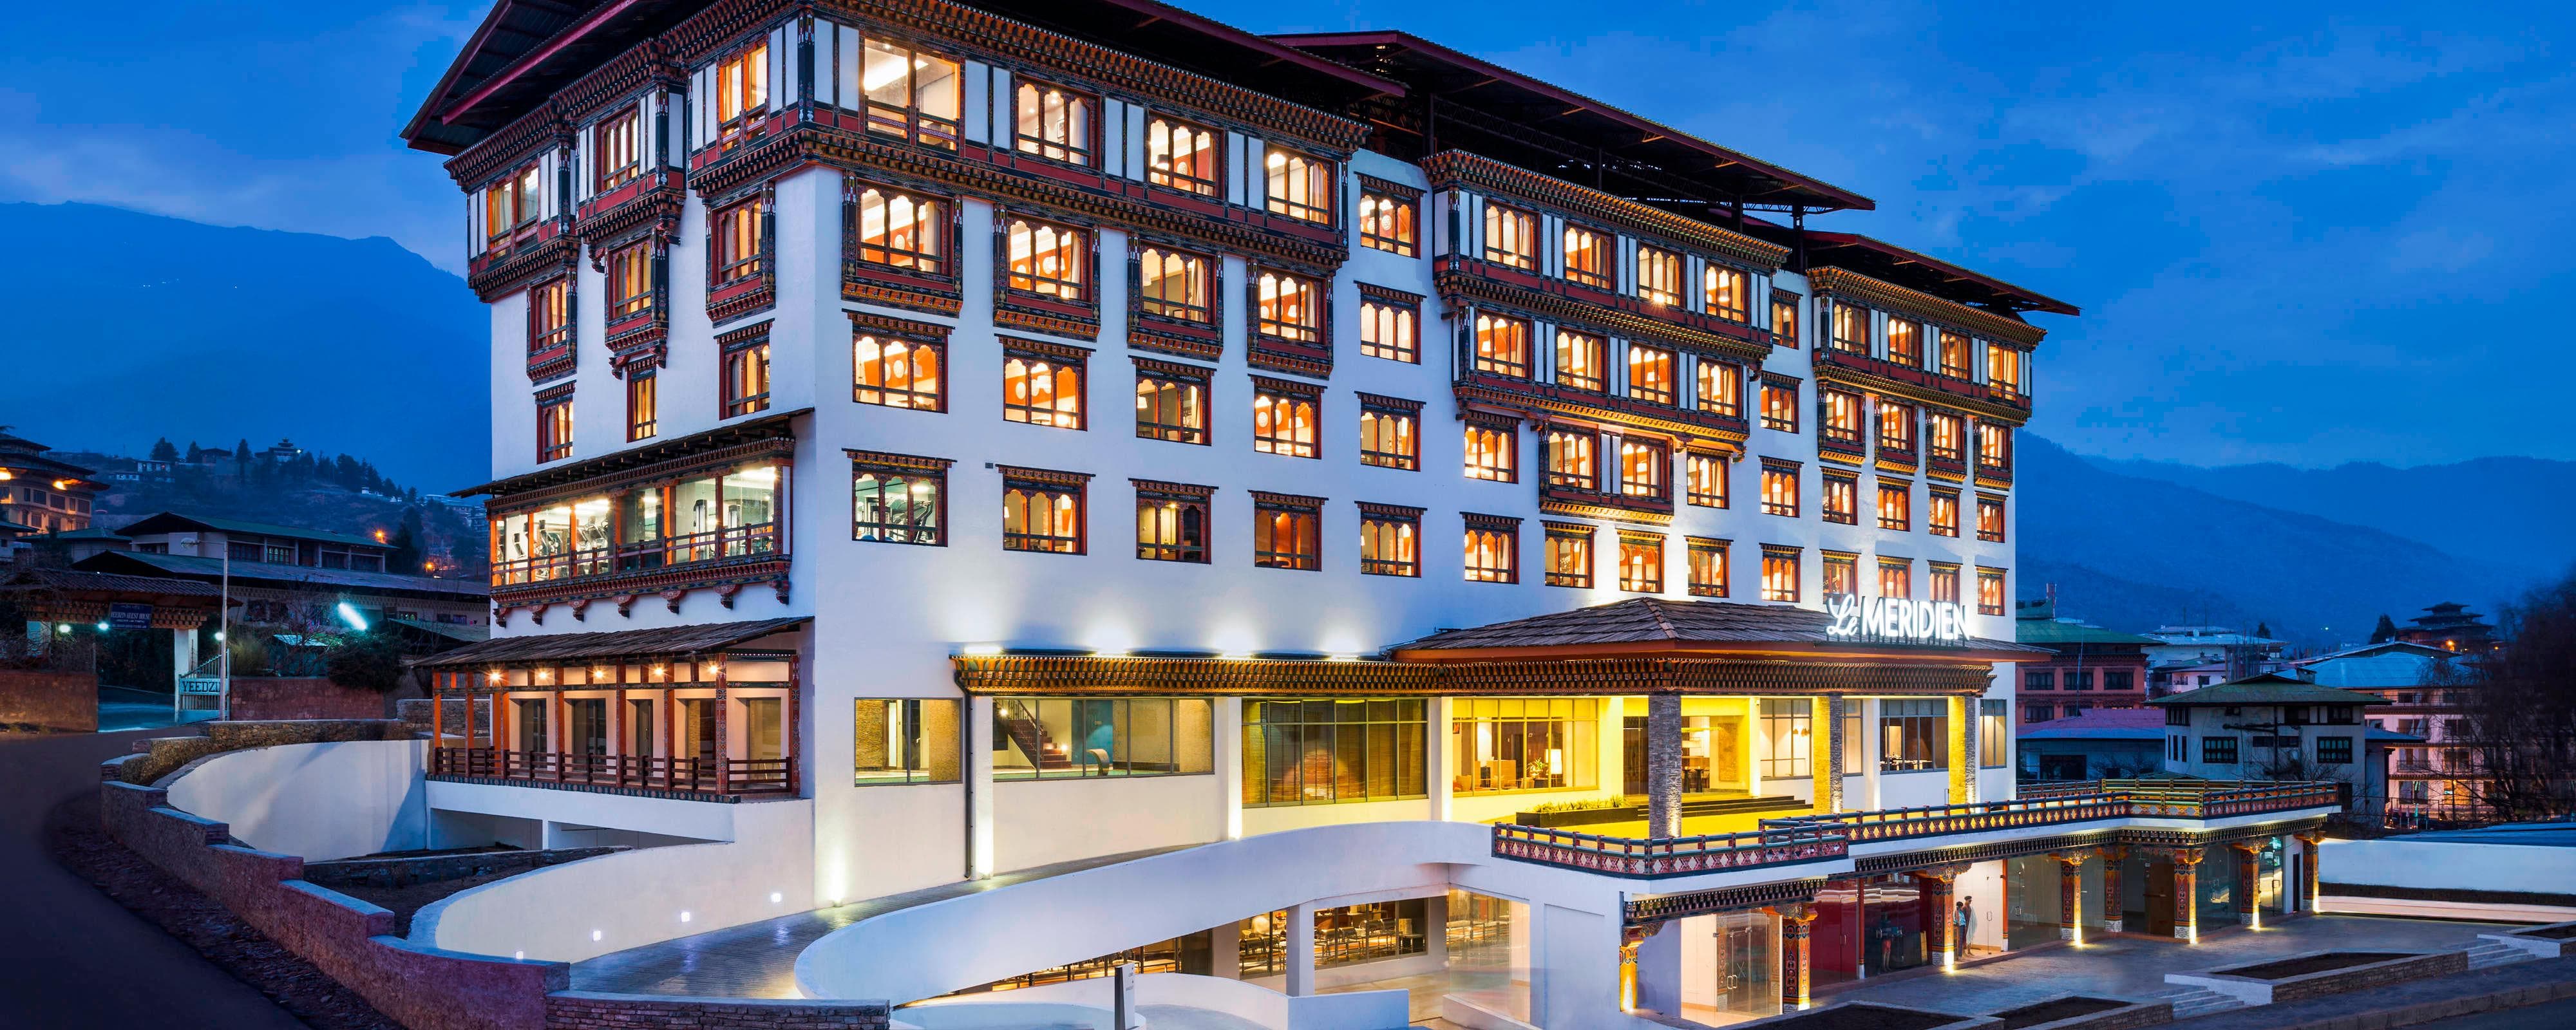 Image for Le Méridien Thimphu, a Marriott hotel.